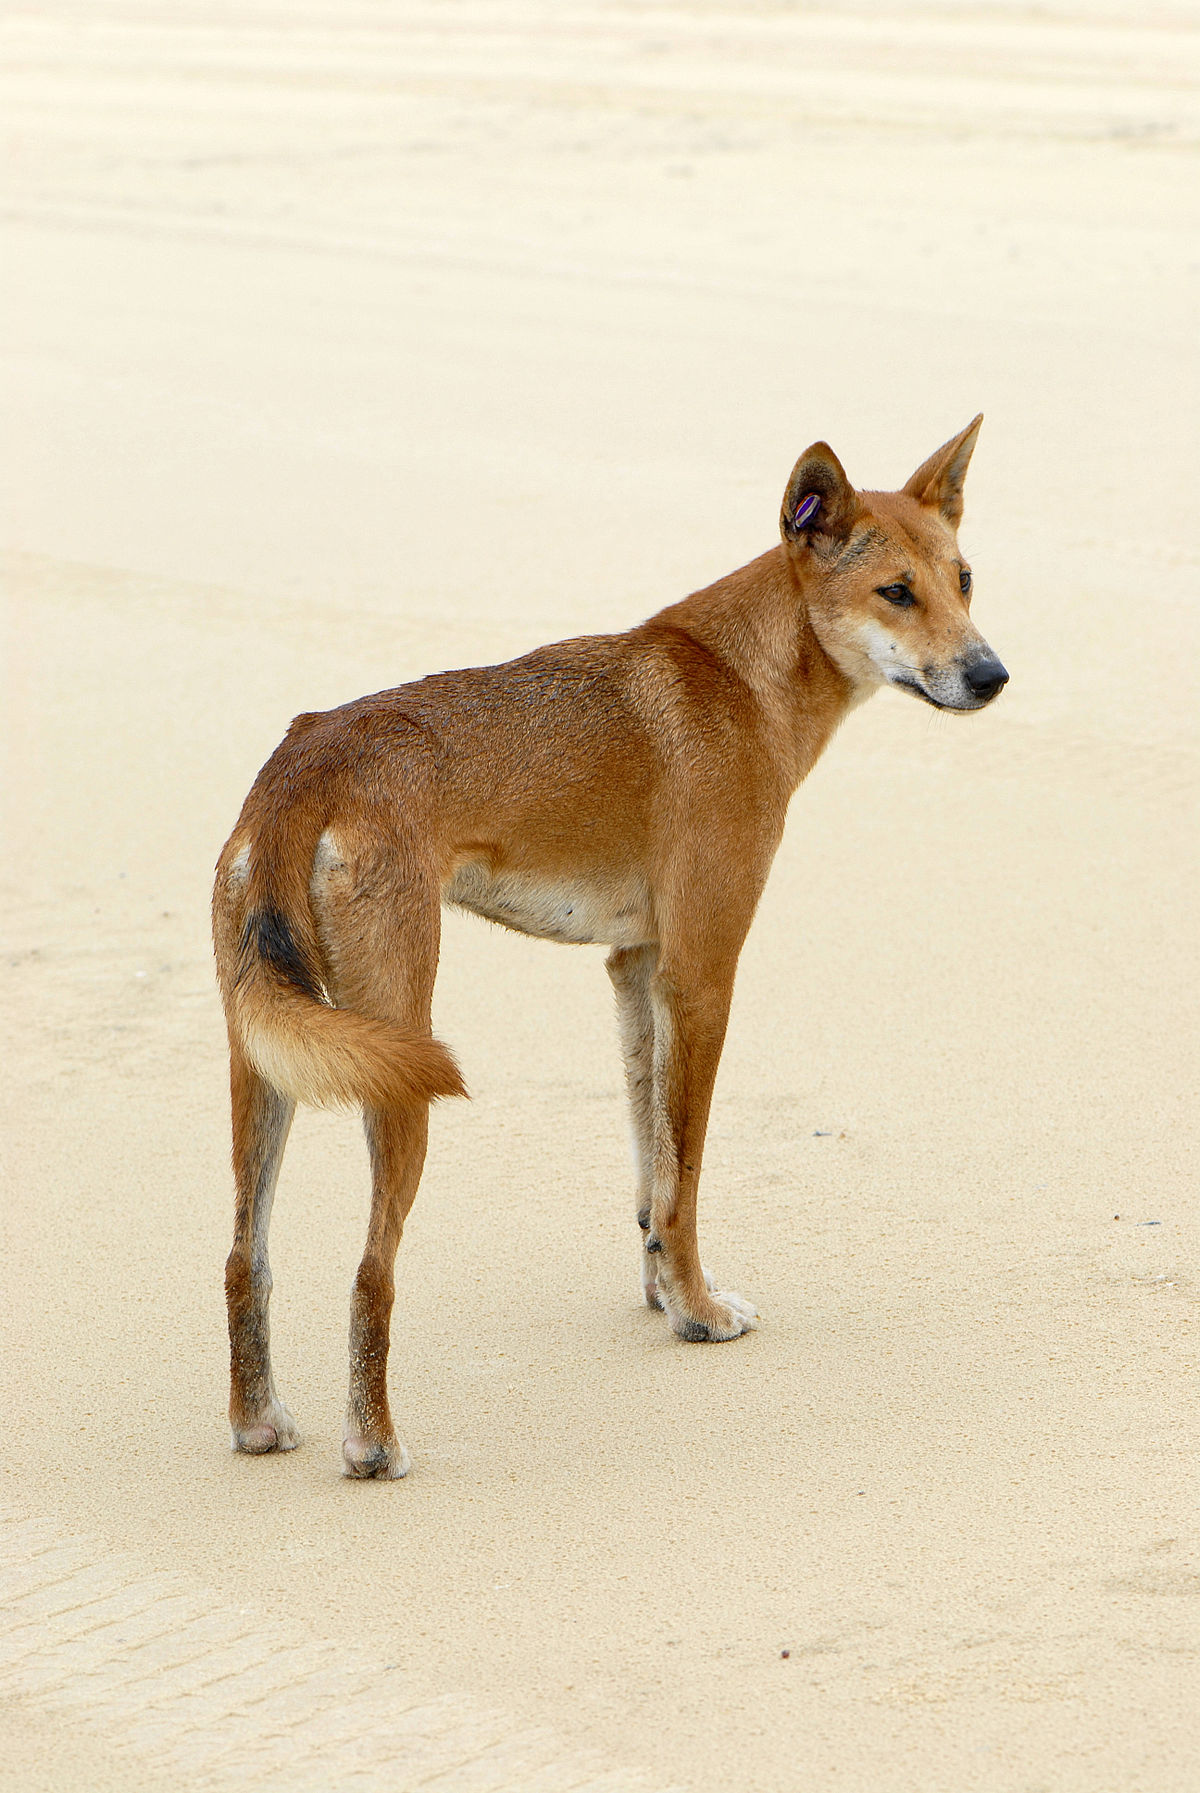 Canis lupus dingo là một loài chó được coi là cận địa chó hoang. Nếu bạn là một người yêu chim và thú vui khám phá thế giới động vật, hãy đến và xem ảnh của chúng tôi về loài chó hiếm này. Những hình ảnh đẹp và sinh động chắc chắn sẽ mang lại cho bạn một trải nghiệm thú vị.